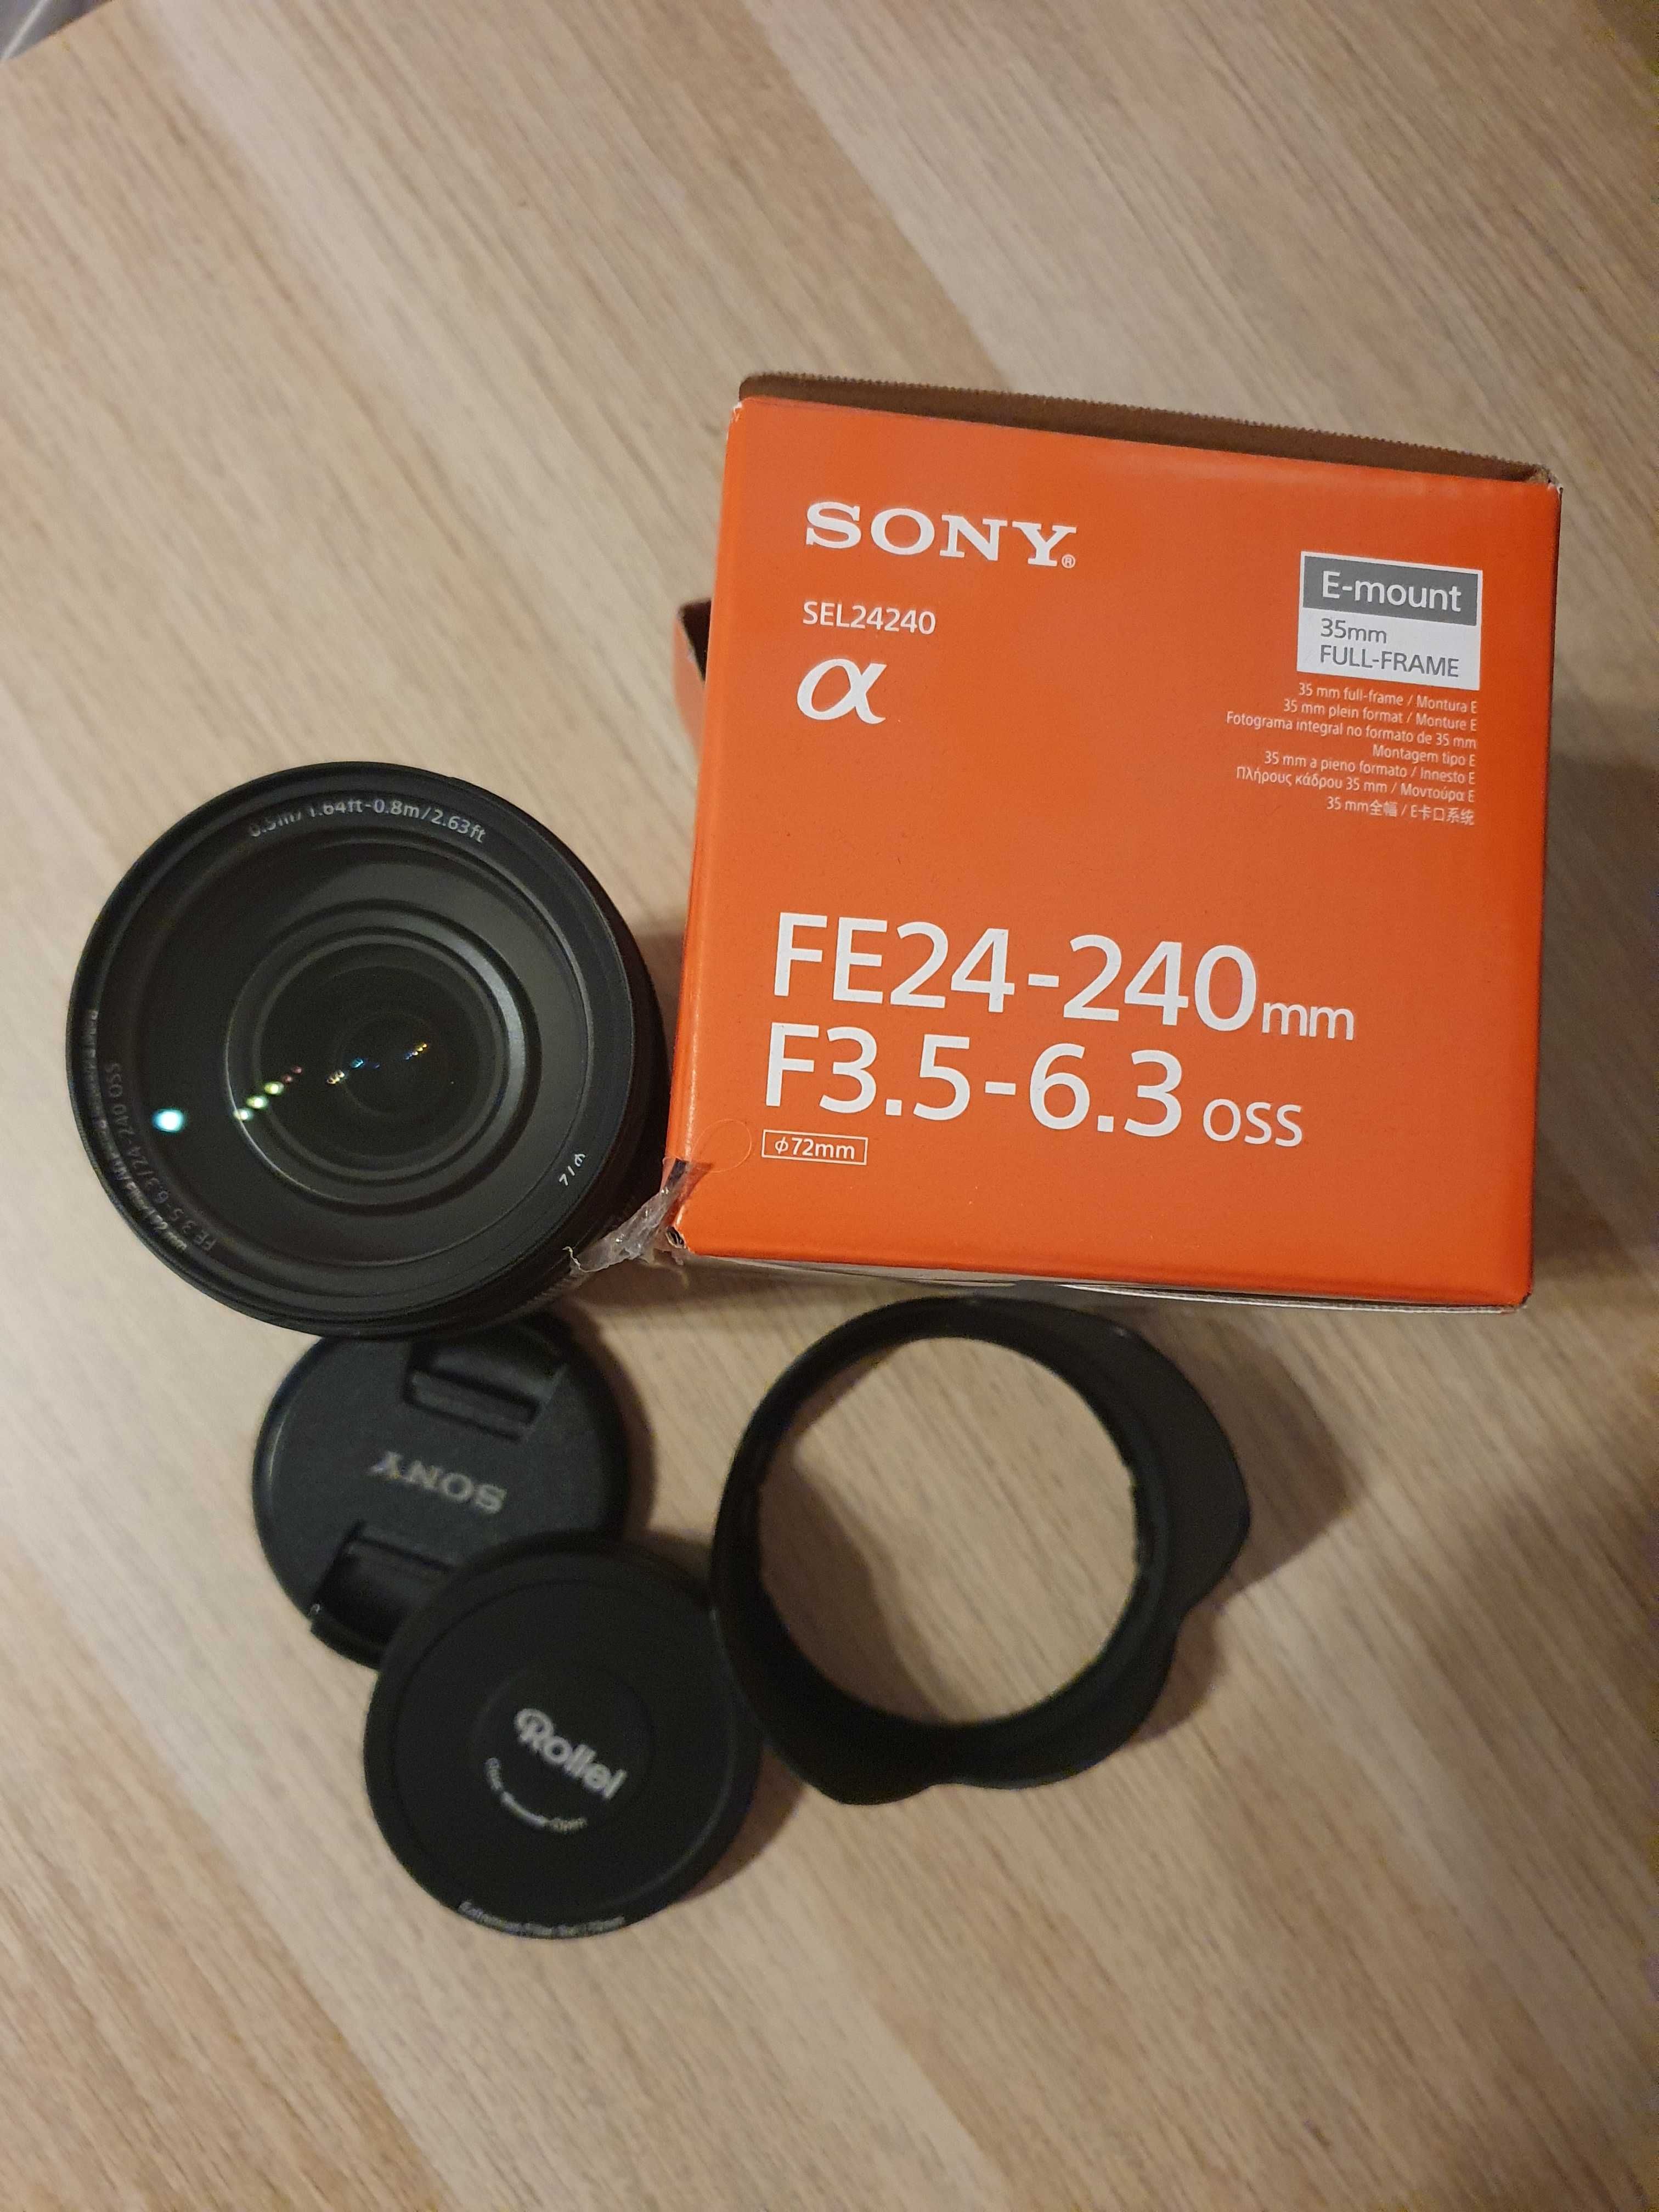 Obiectiv Sony SEL24240, FE24-240mmm Full Frame